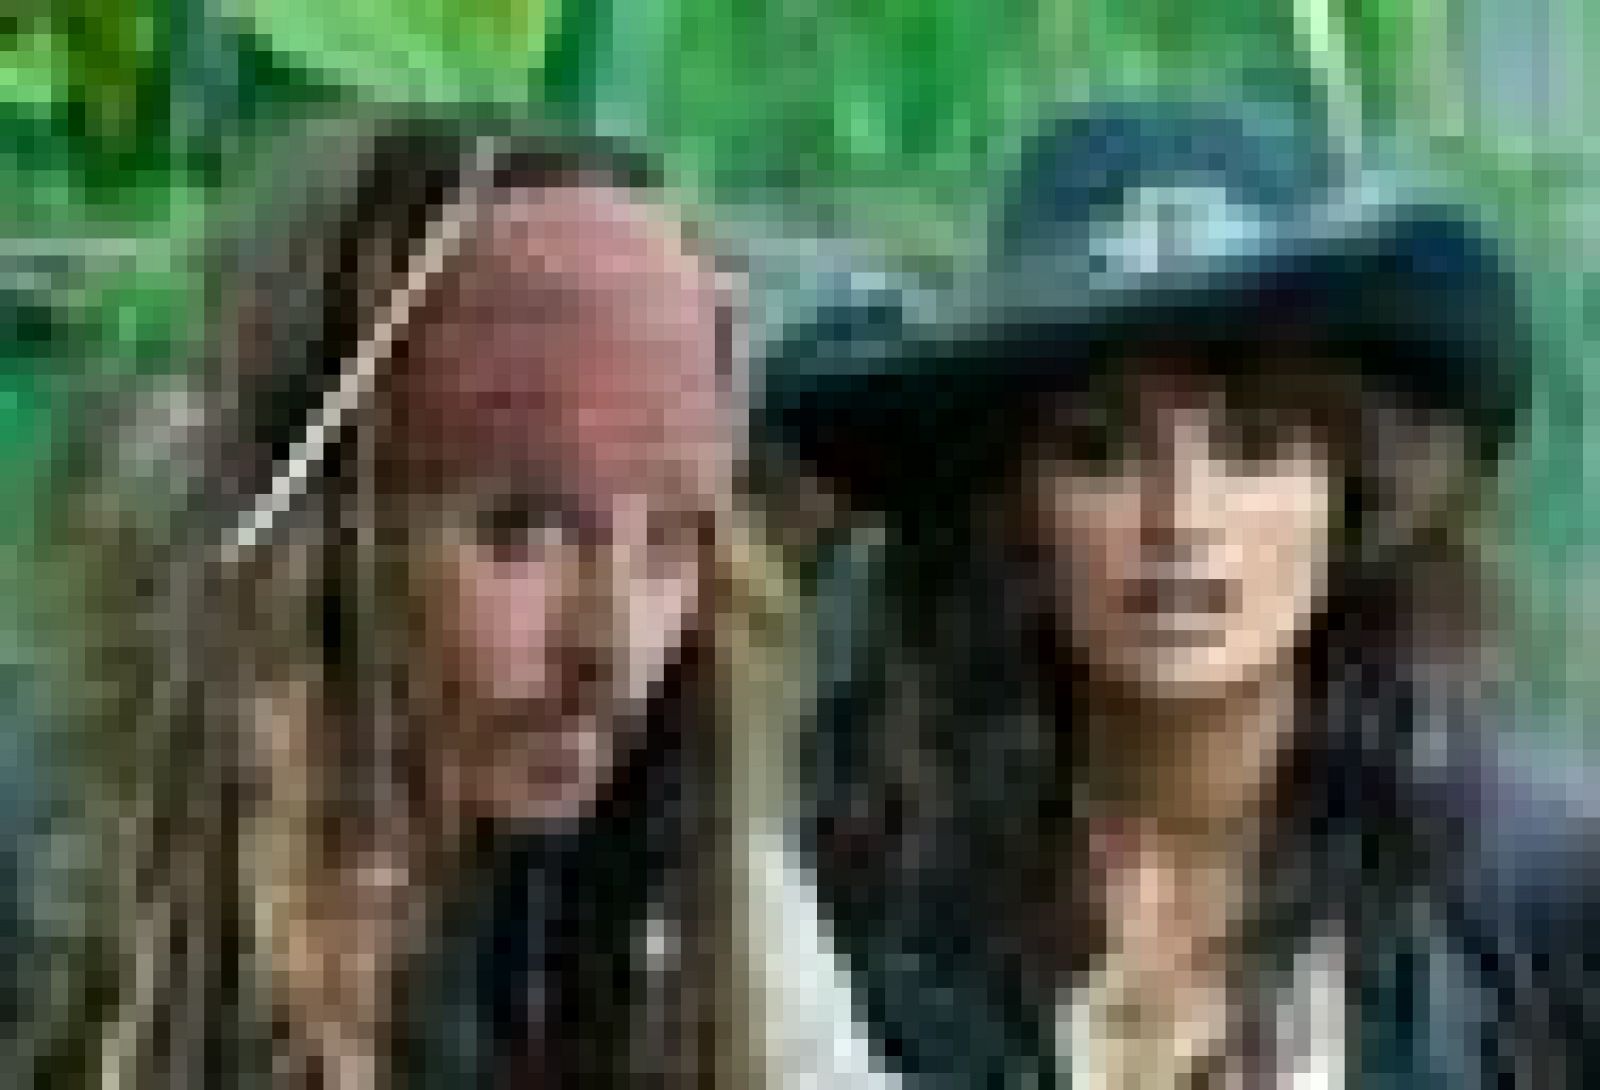 Nuevo tráiler de 'Piratas del Caribe. En mareas misteriosas', con Johnny Depp y Penélope Cruz, que se estrena en cines el 20 de mayo.